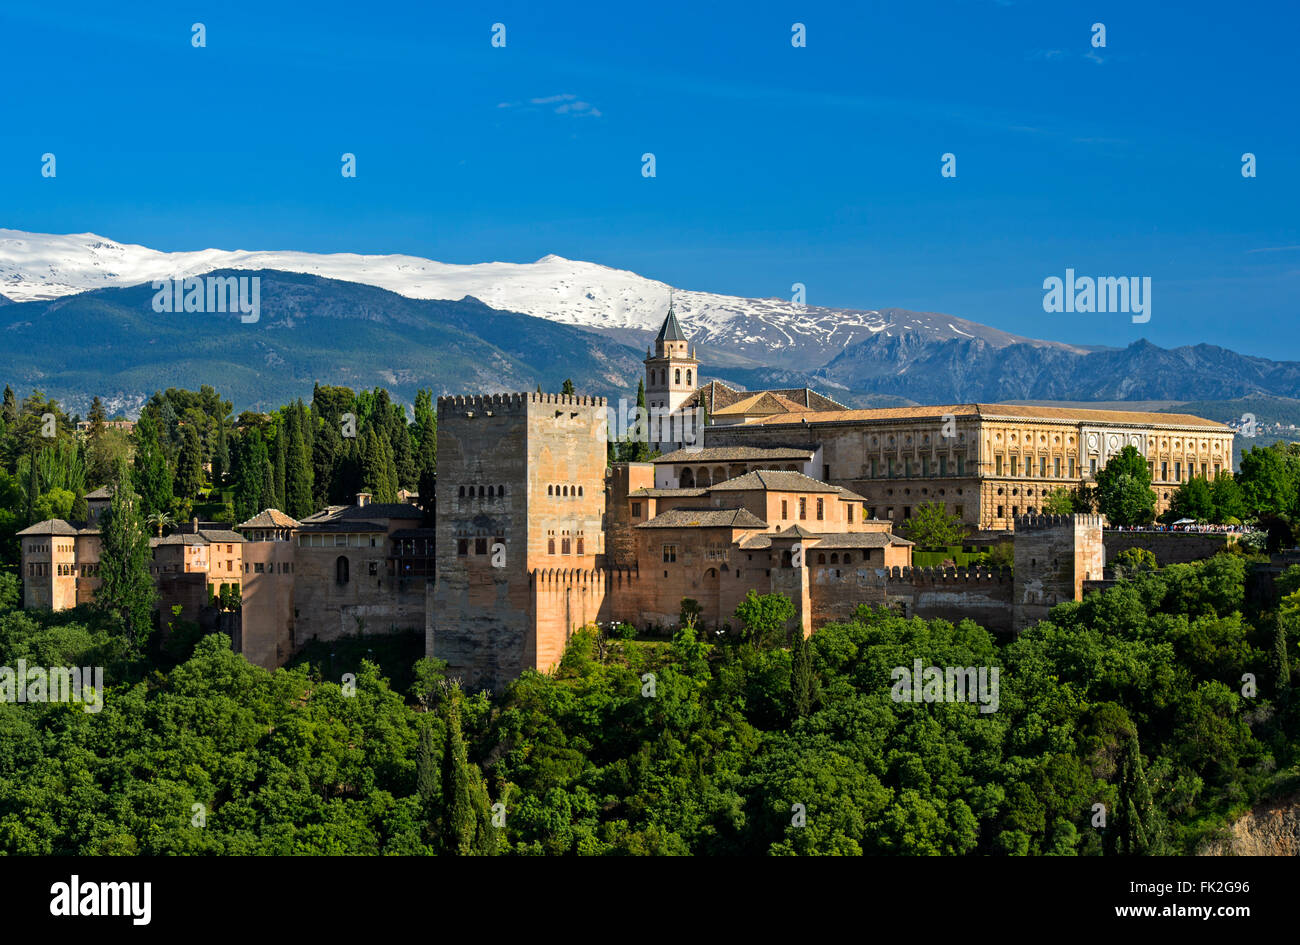 Alhambra, Site du patrimoine mondial de l'UNESCO, à l'encontre de la Sierra Nevada, Grenade, Andalousie, Espagne Banque D'Images